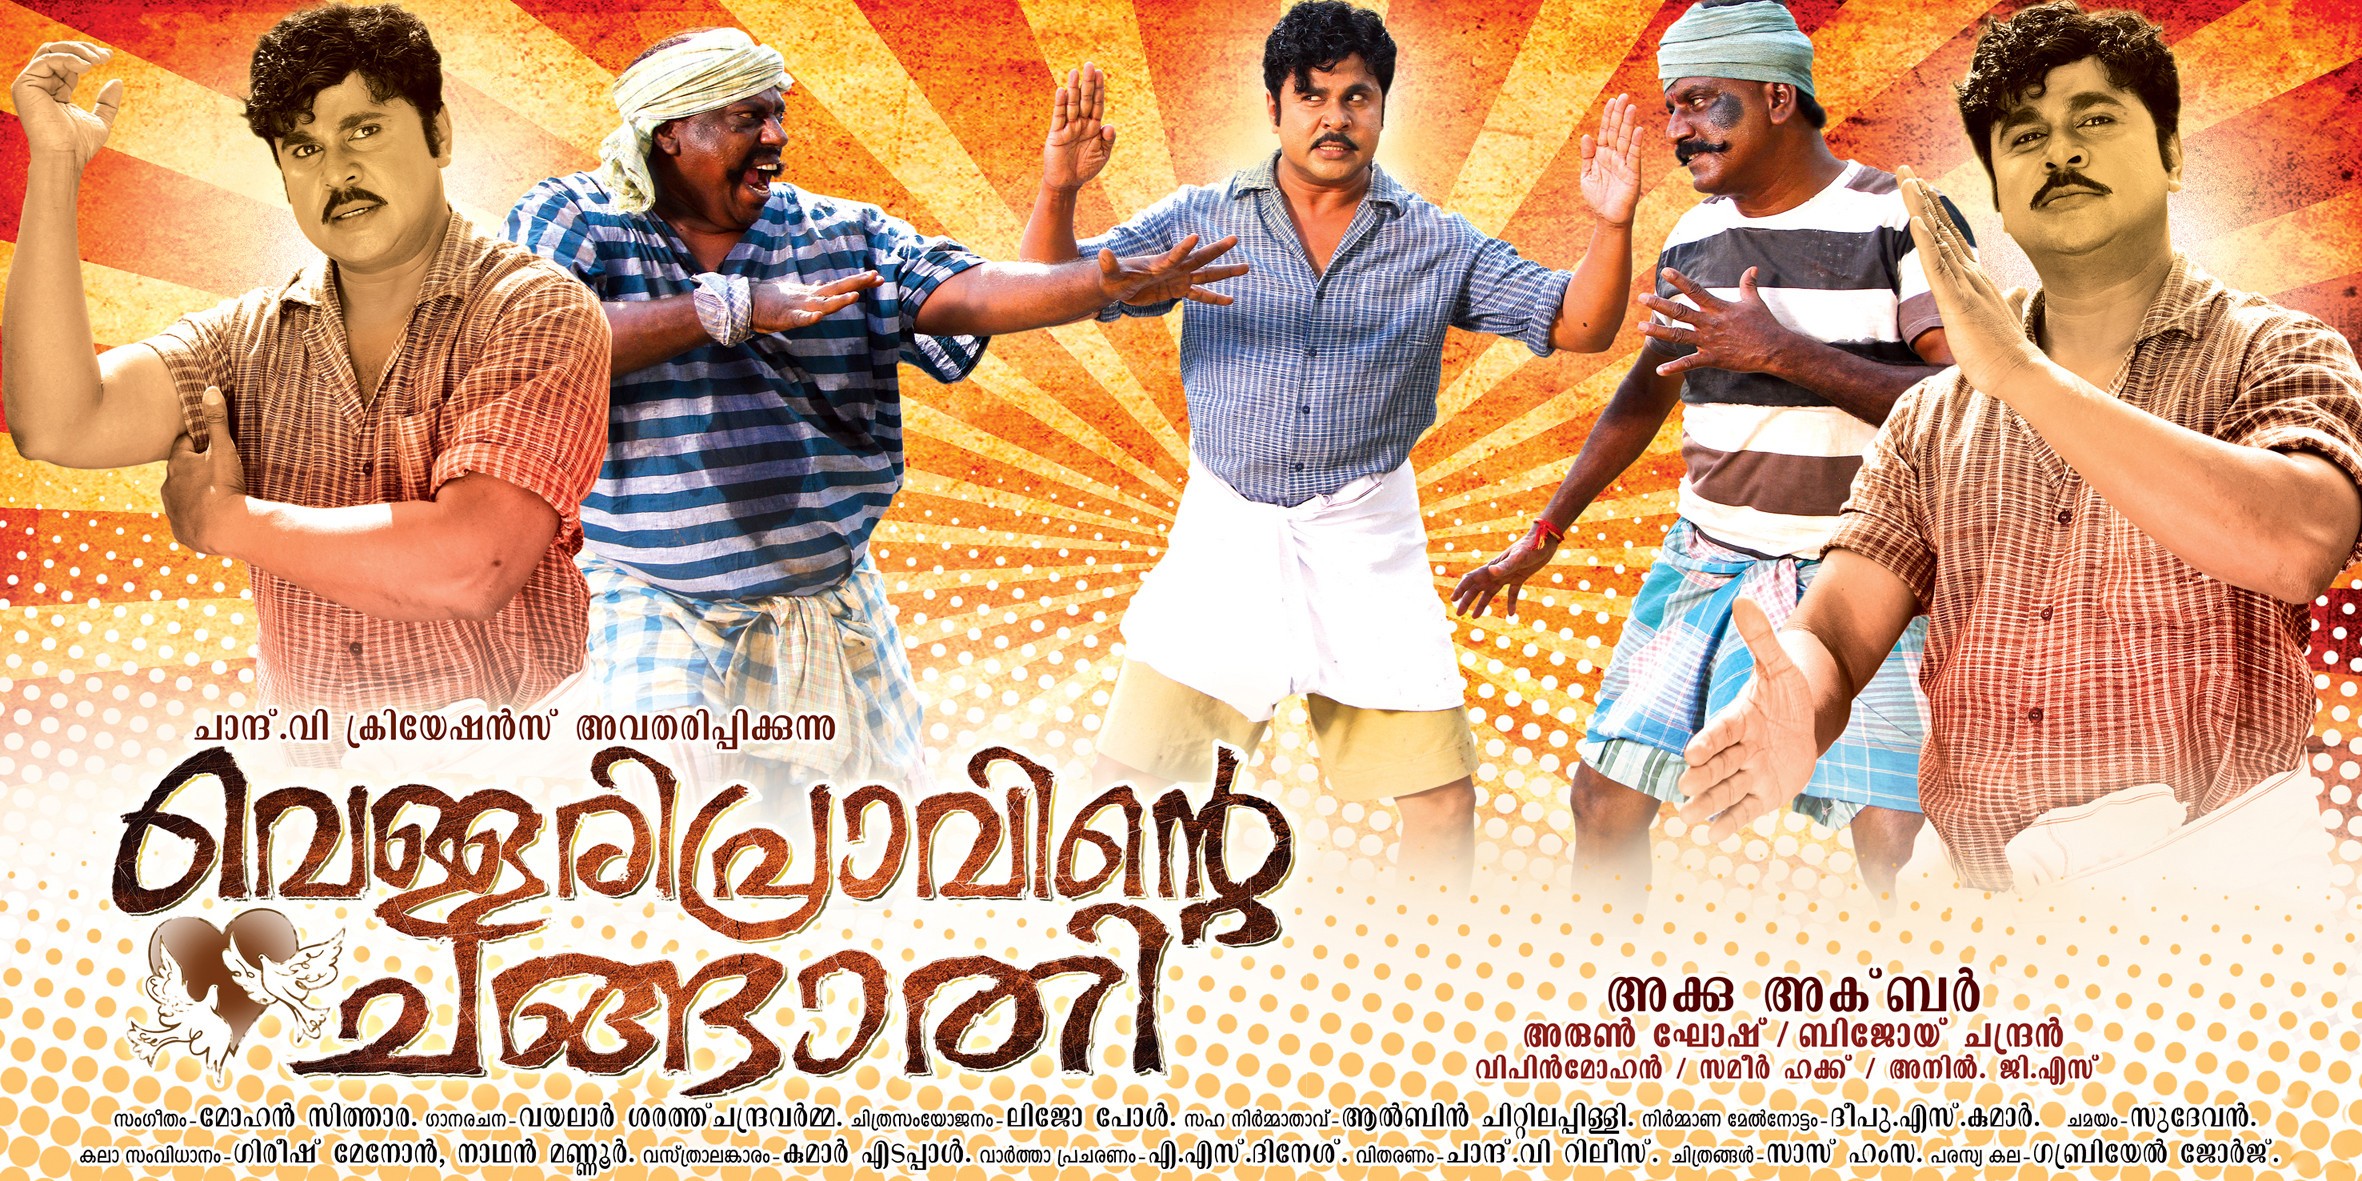 Mega Sized Movie Poster Image for Vellaripravinte Changathi (#5 of 9)